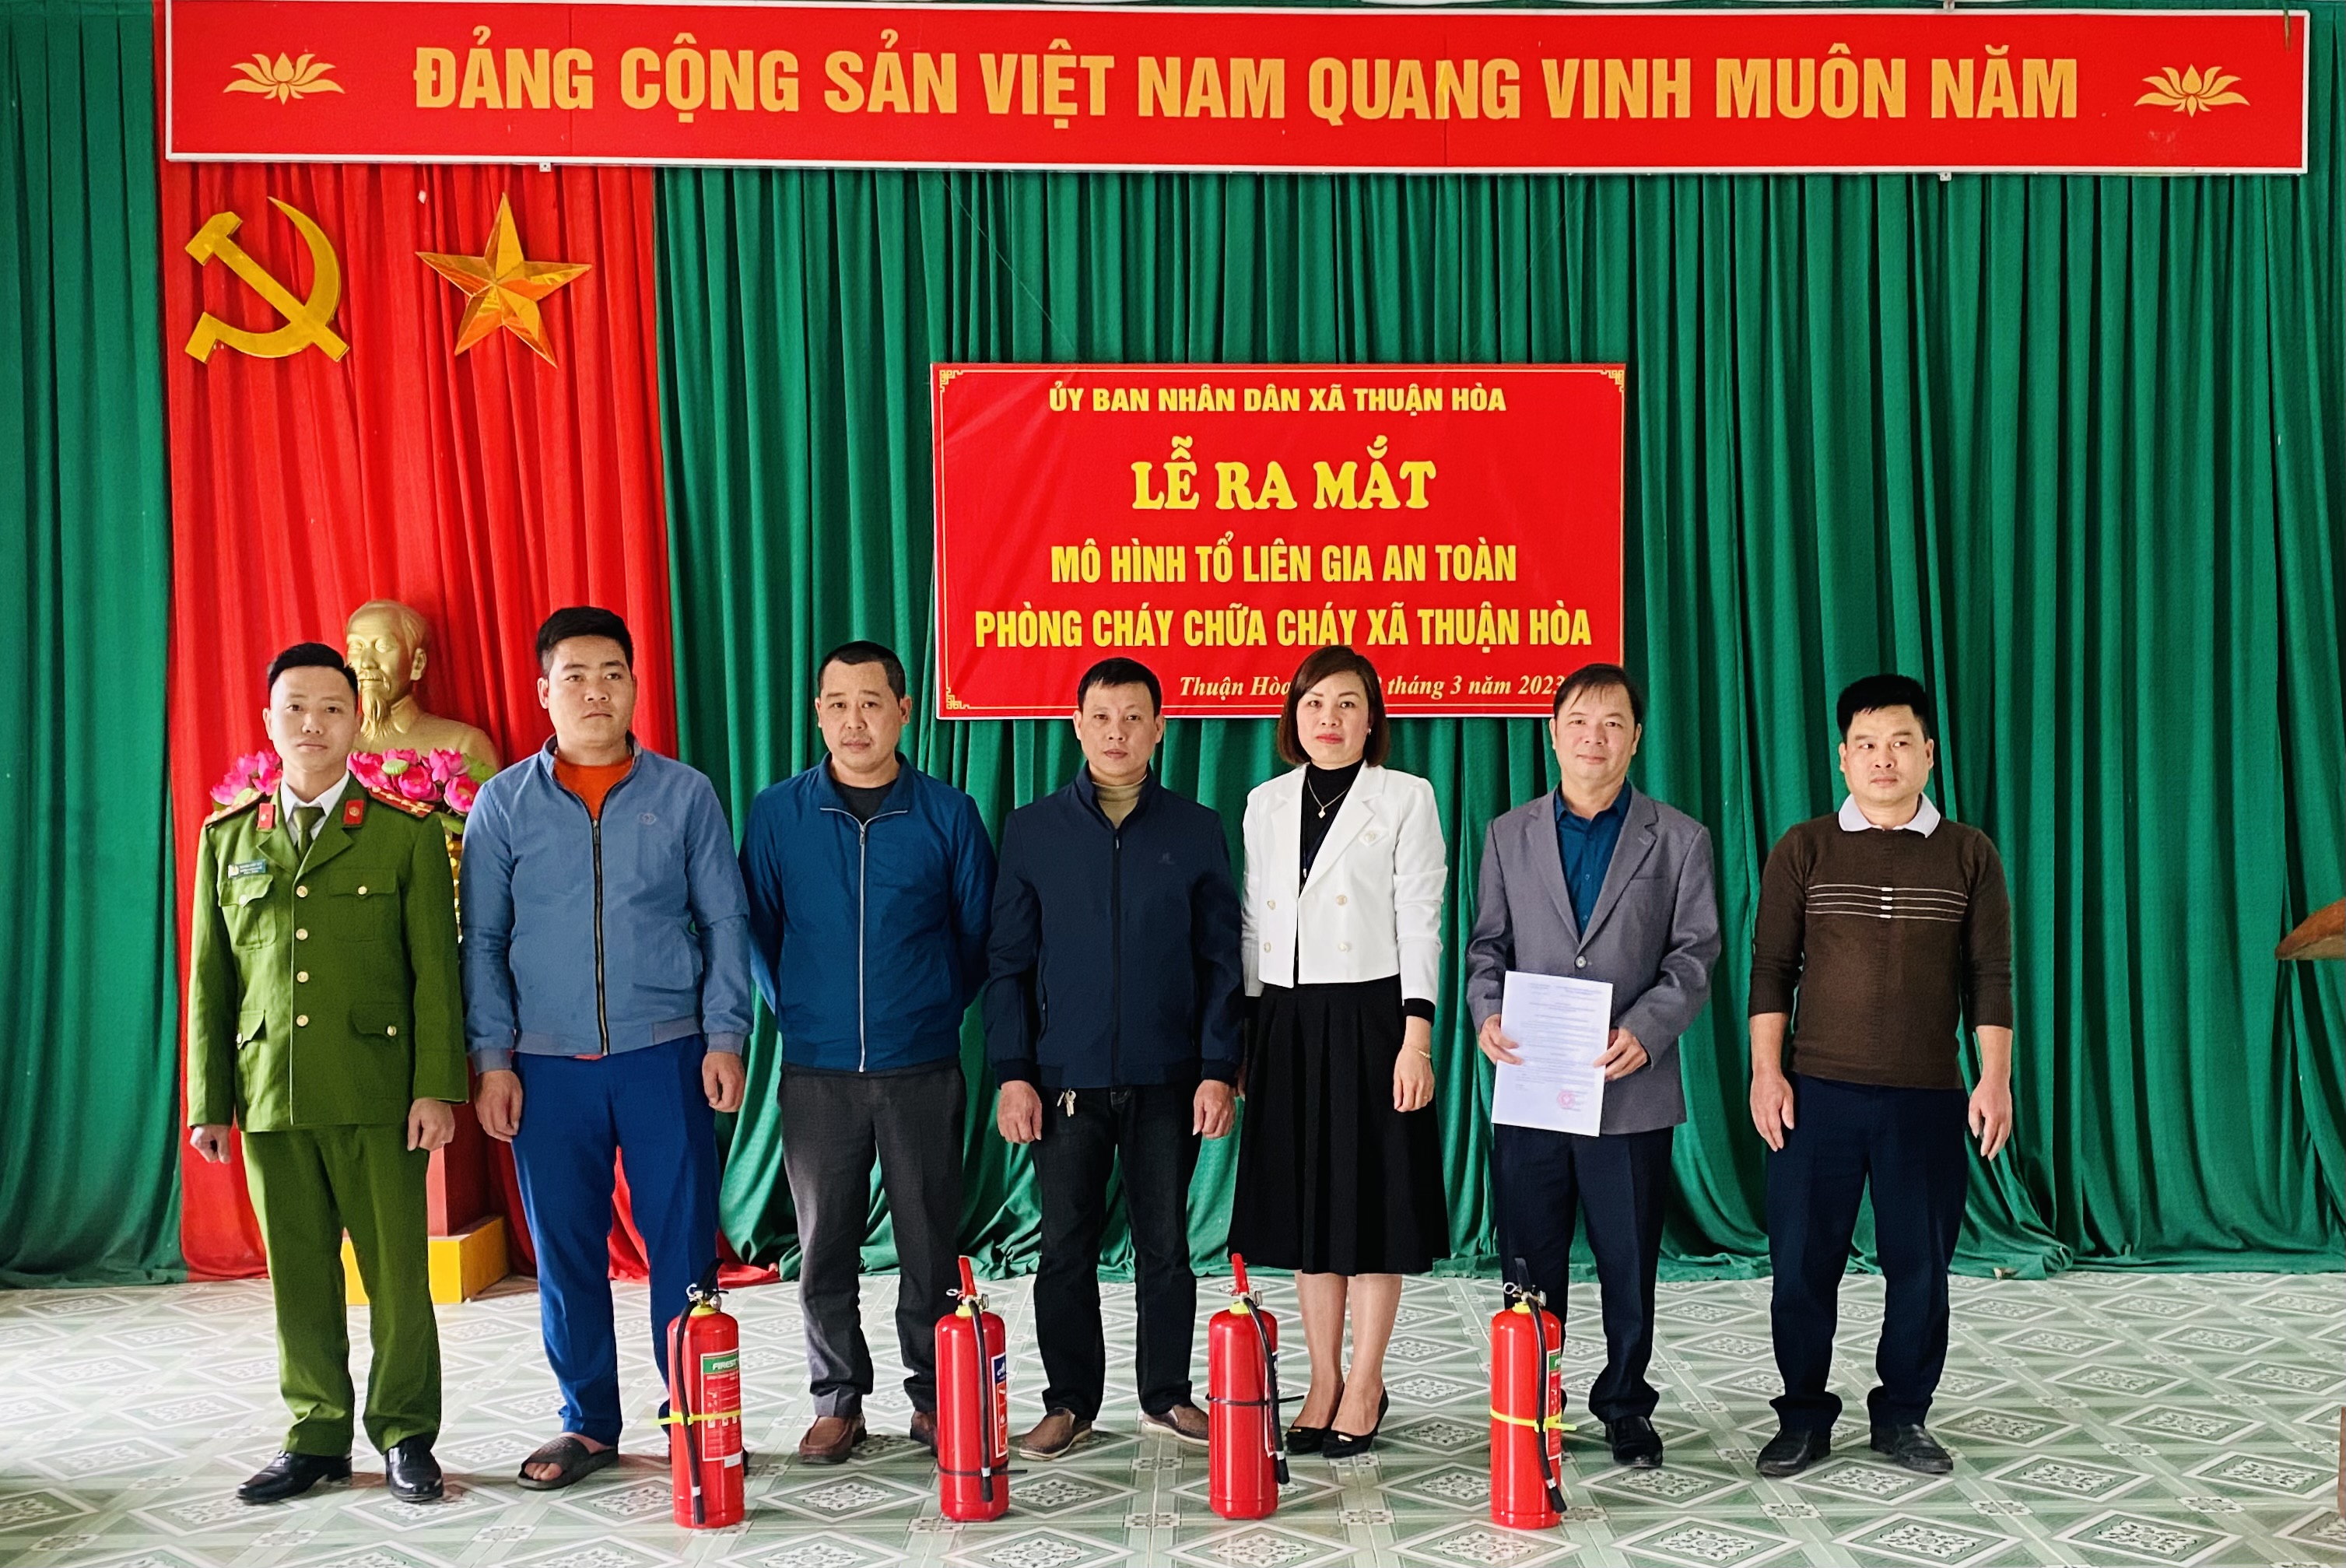 Ra mắt mô hình “Tổ liên gia an toàn PCCC” tại xã Thuận Hoà